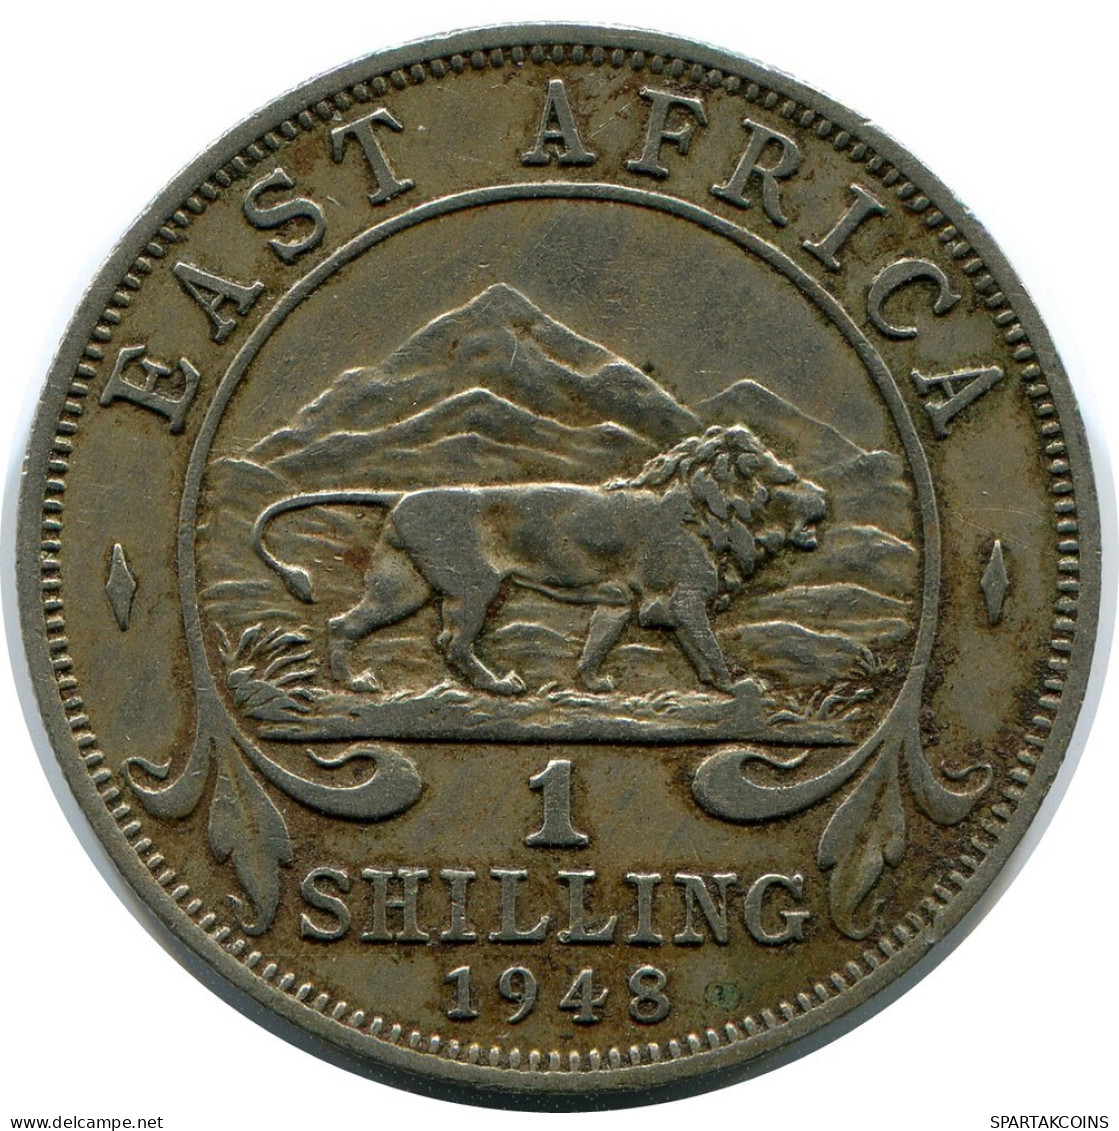 1 SHILLING 1948 EAST AFRICA Coin #AP875.U.A - Colonia Britannica